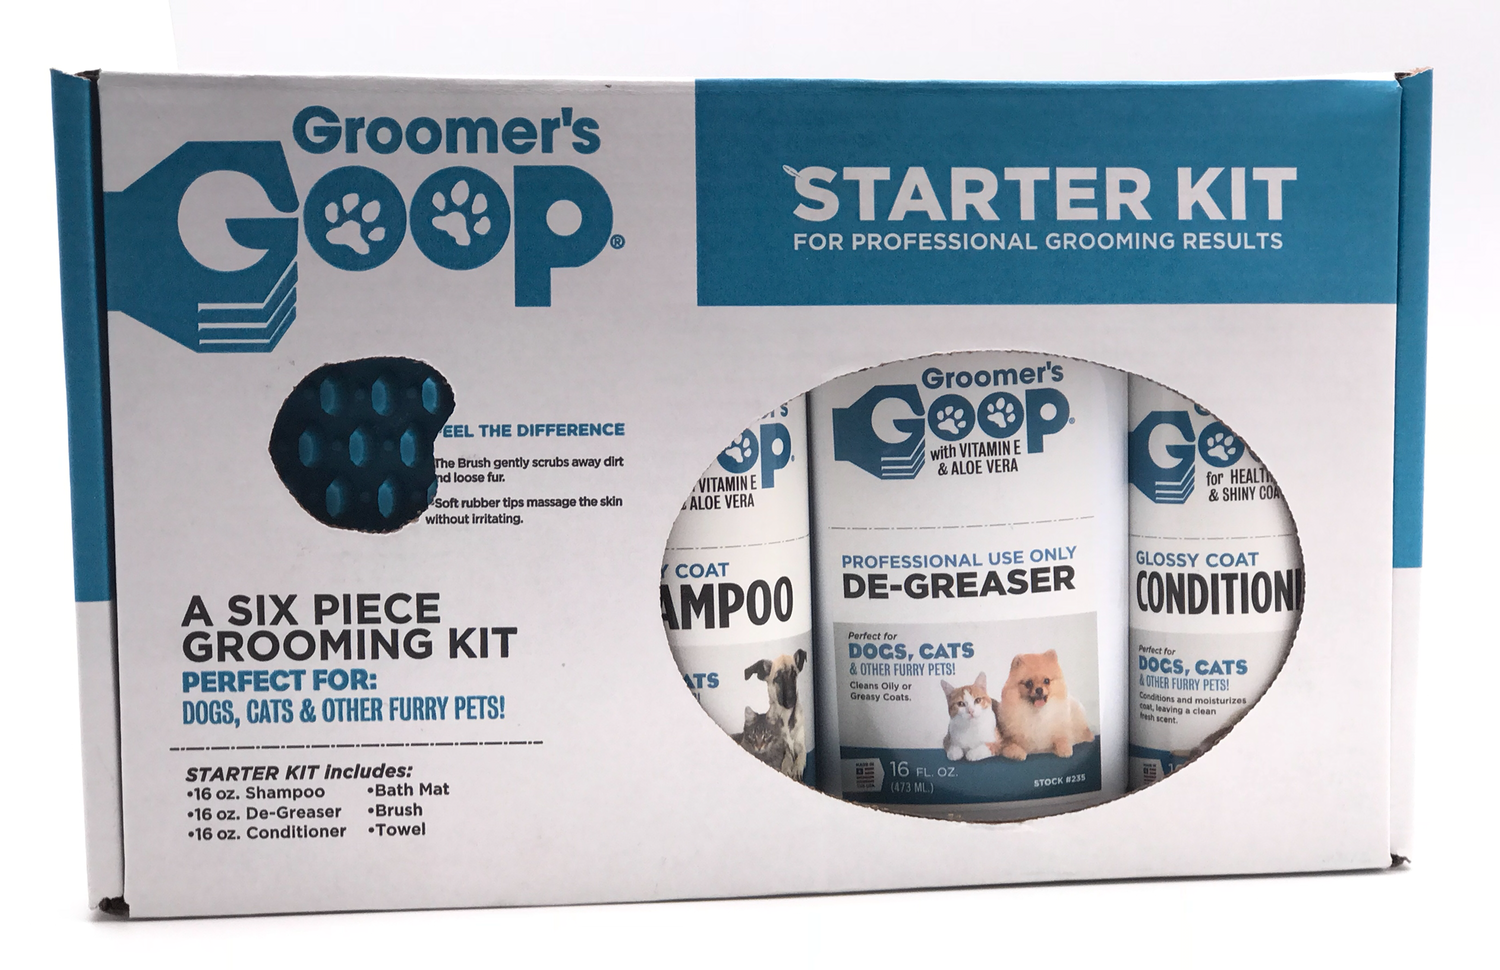 GROOMER'S GROOMER'S GOOP набор - Starter kit